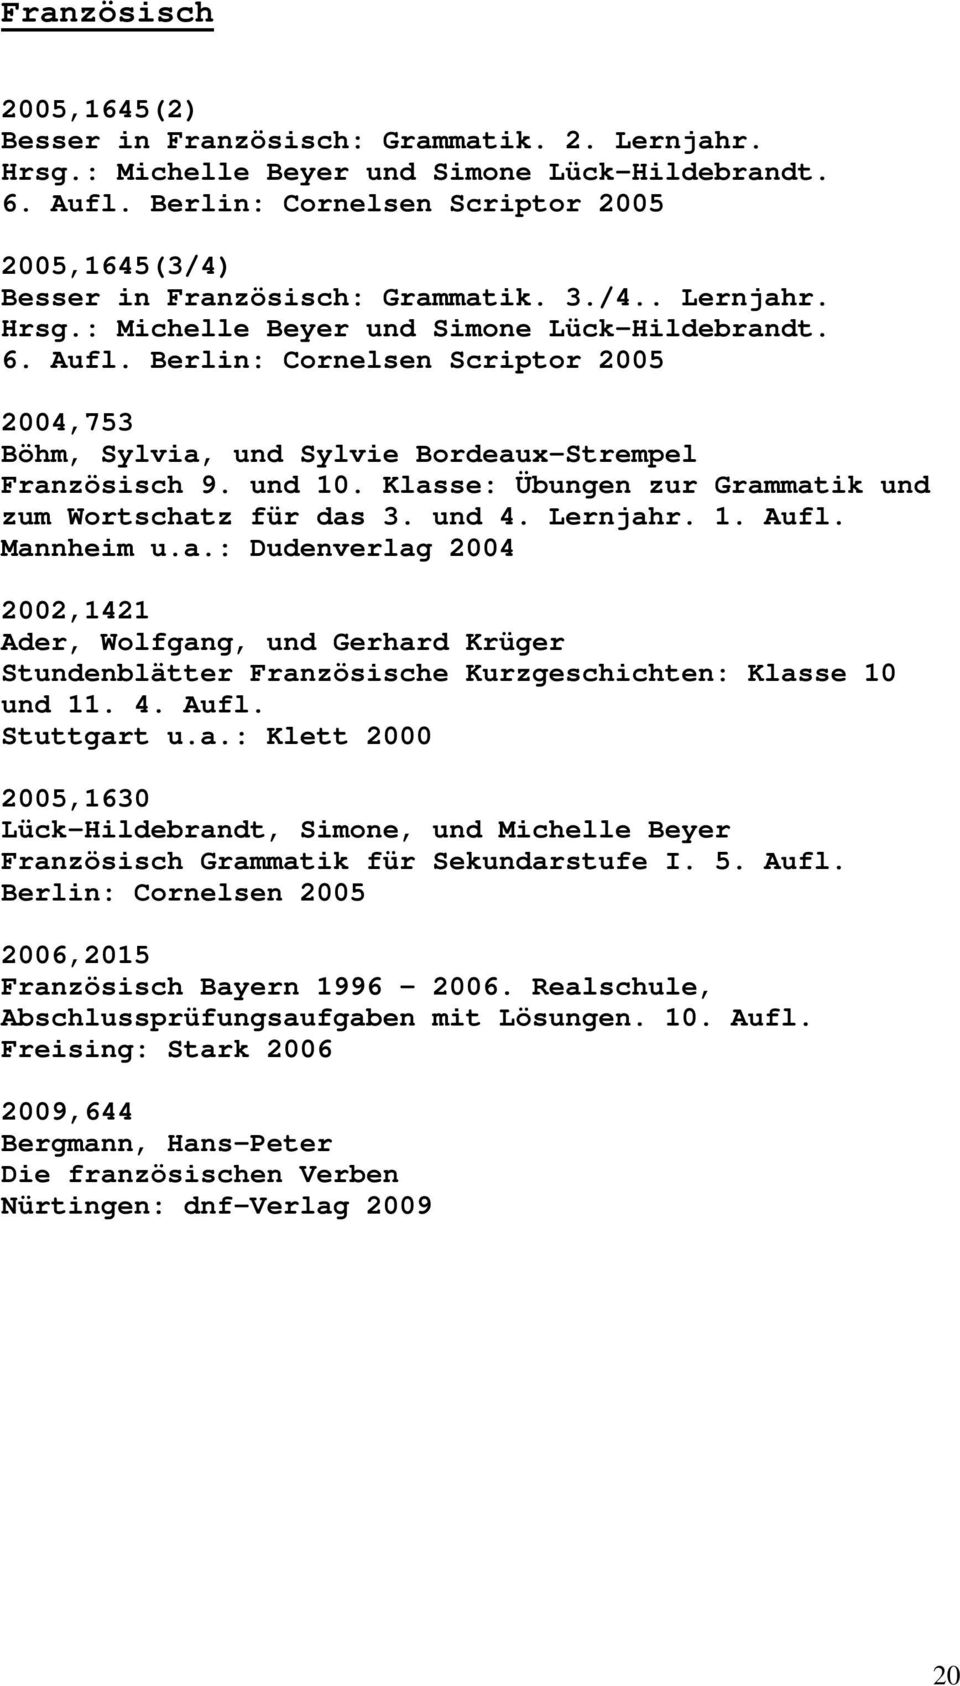 Berlin: Cornelsen Scriptor 2005 2004,753 Böhm, Sylvia, und Sylvie Bordeaux-Strempel Französisch 9. und 10. Klasse: Übungen zur Grammatik und zum Wortschatz für das 3. und 4. Lernjahr. 1. Aufl.